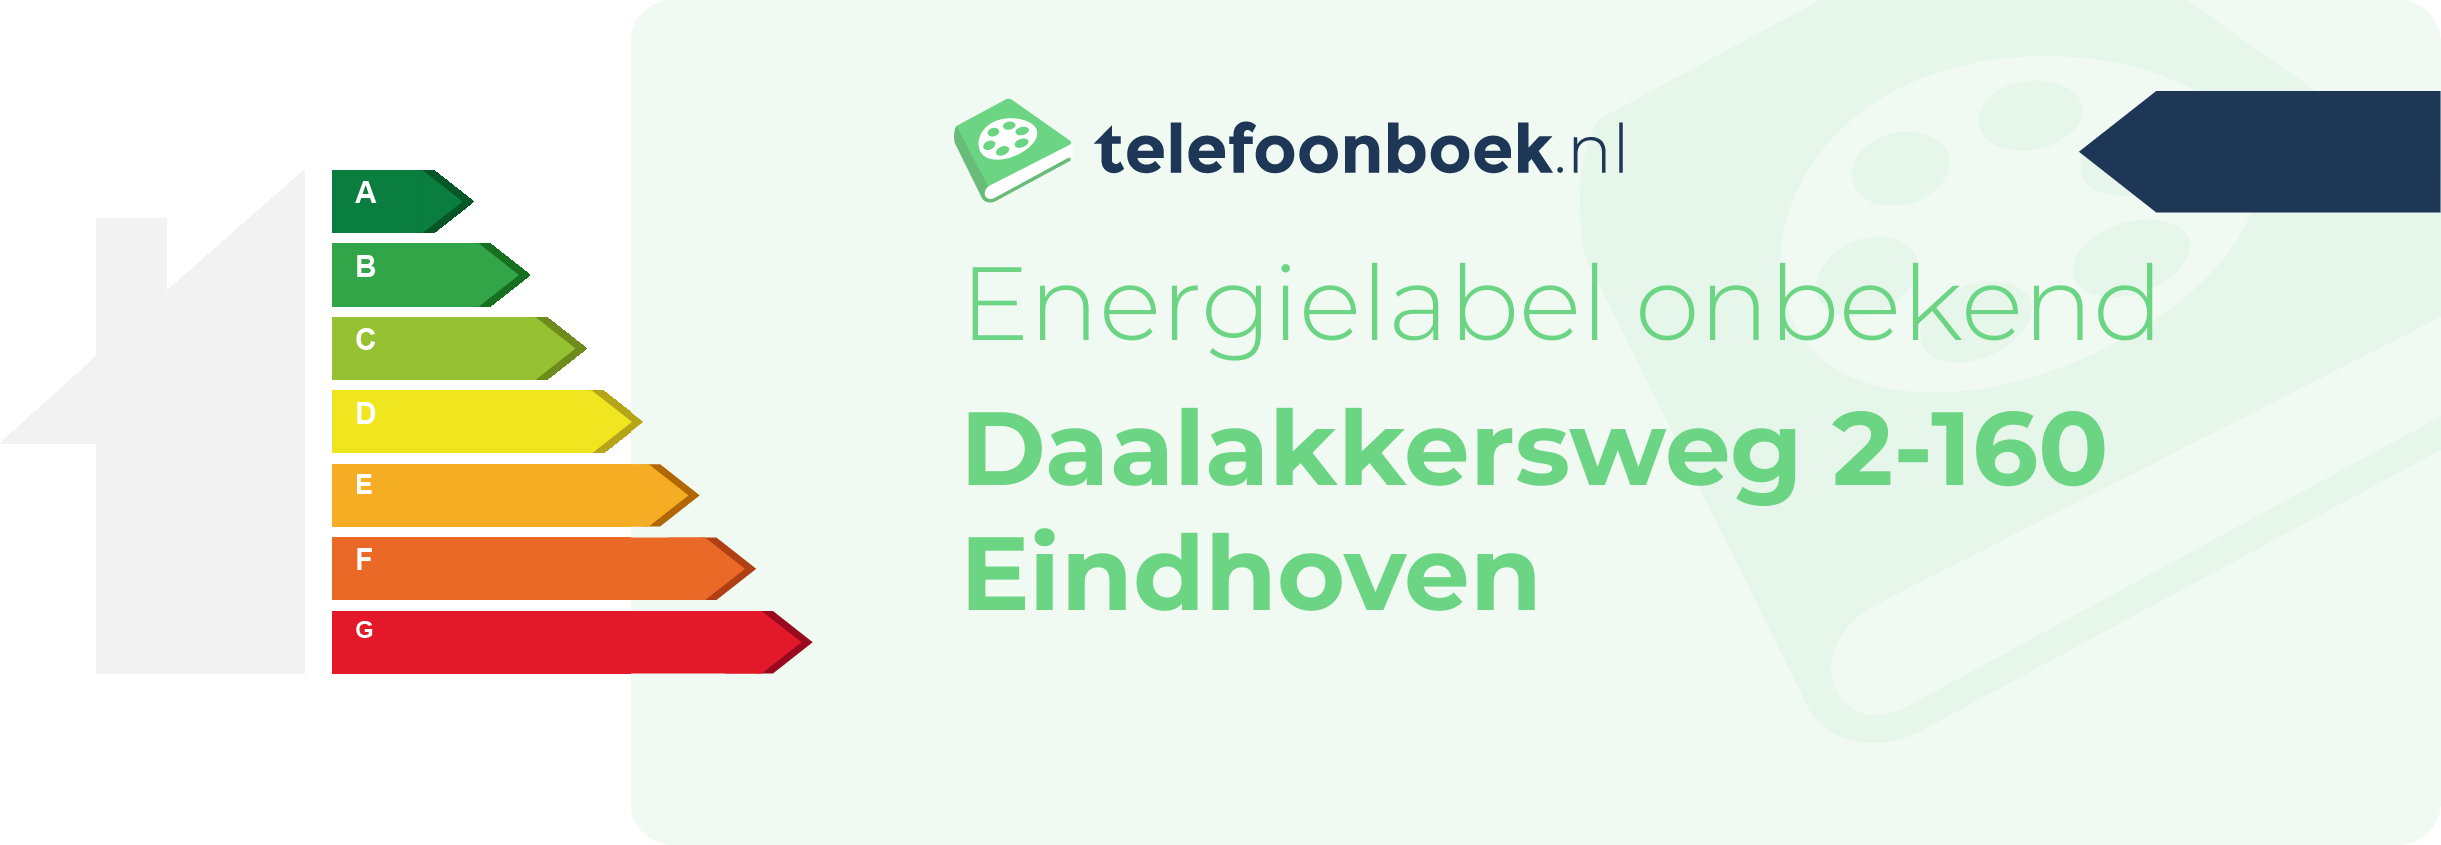 Energielabel Daalakkersweg 2-160 Eindhoven